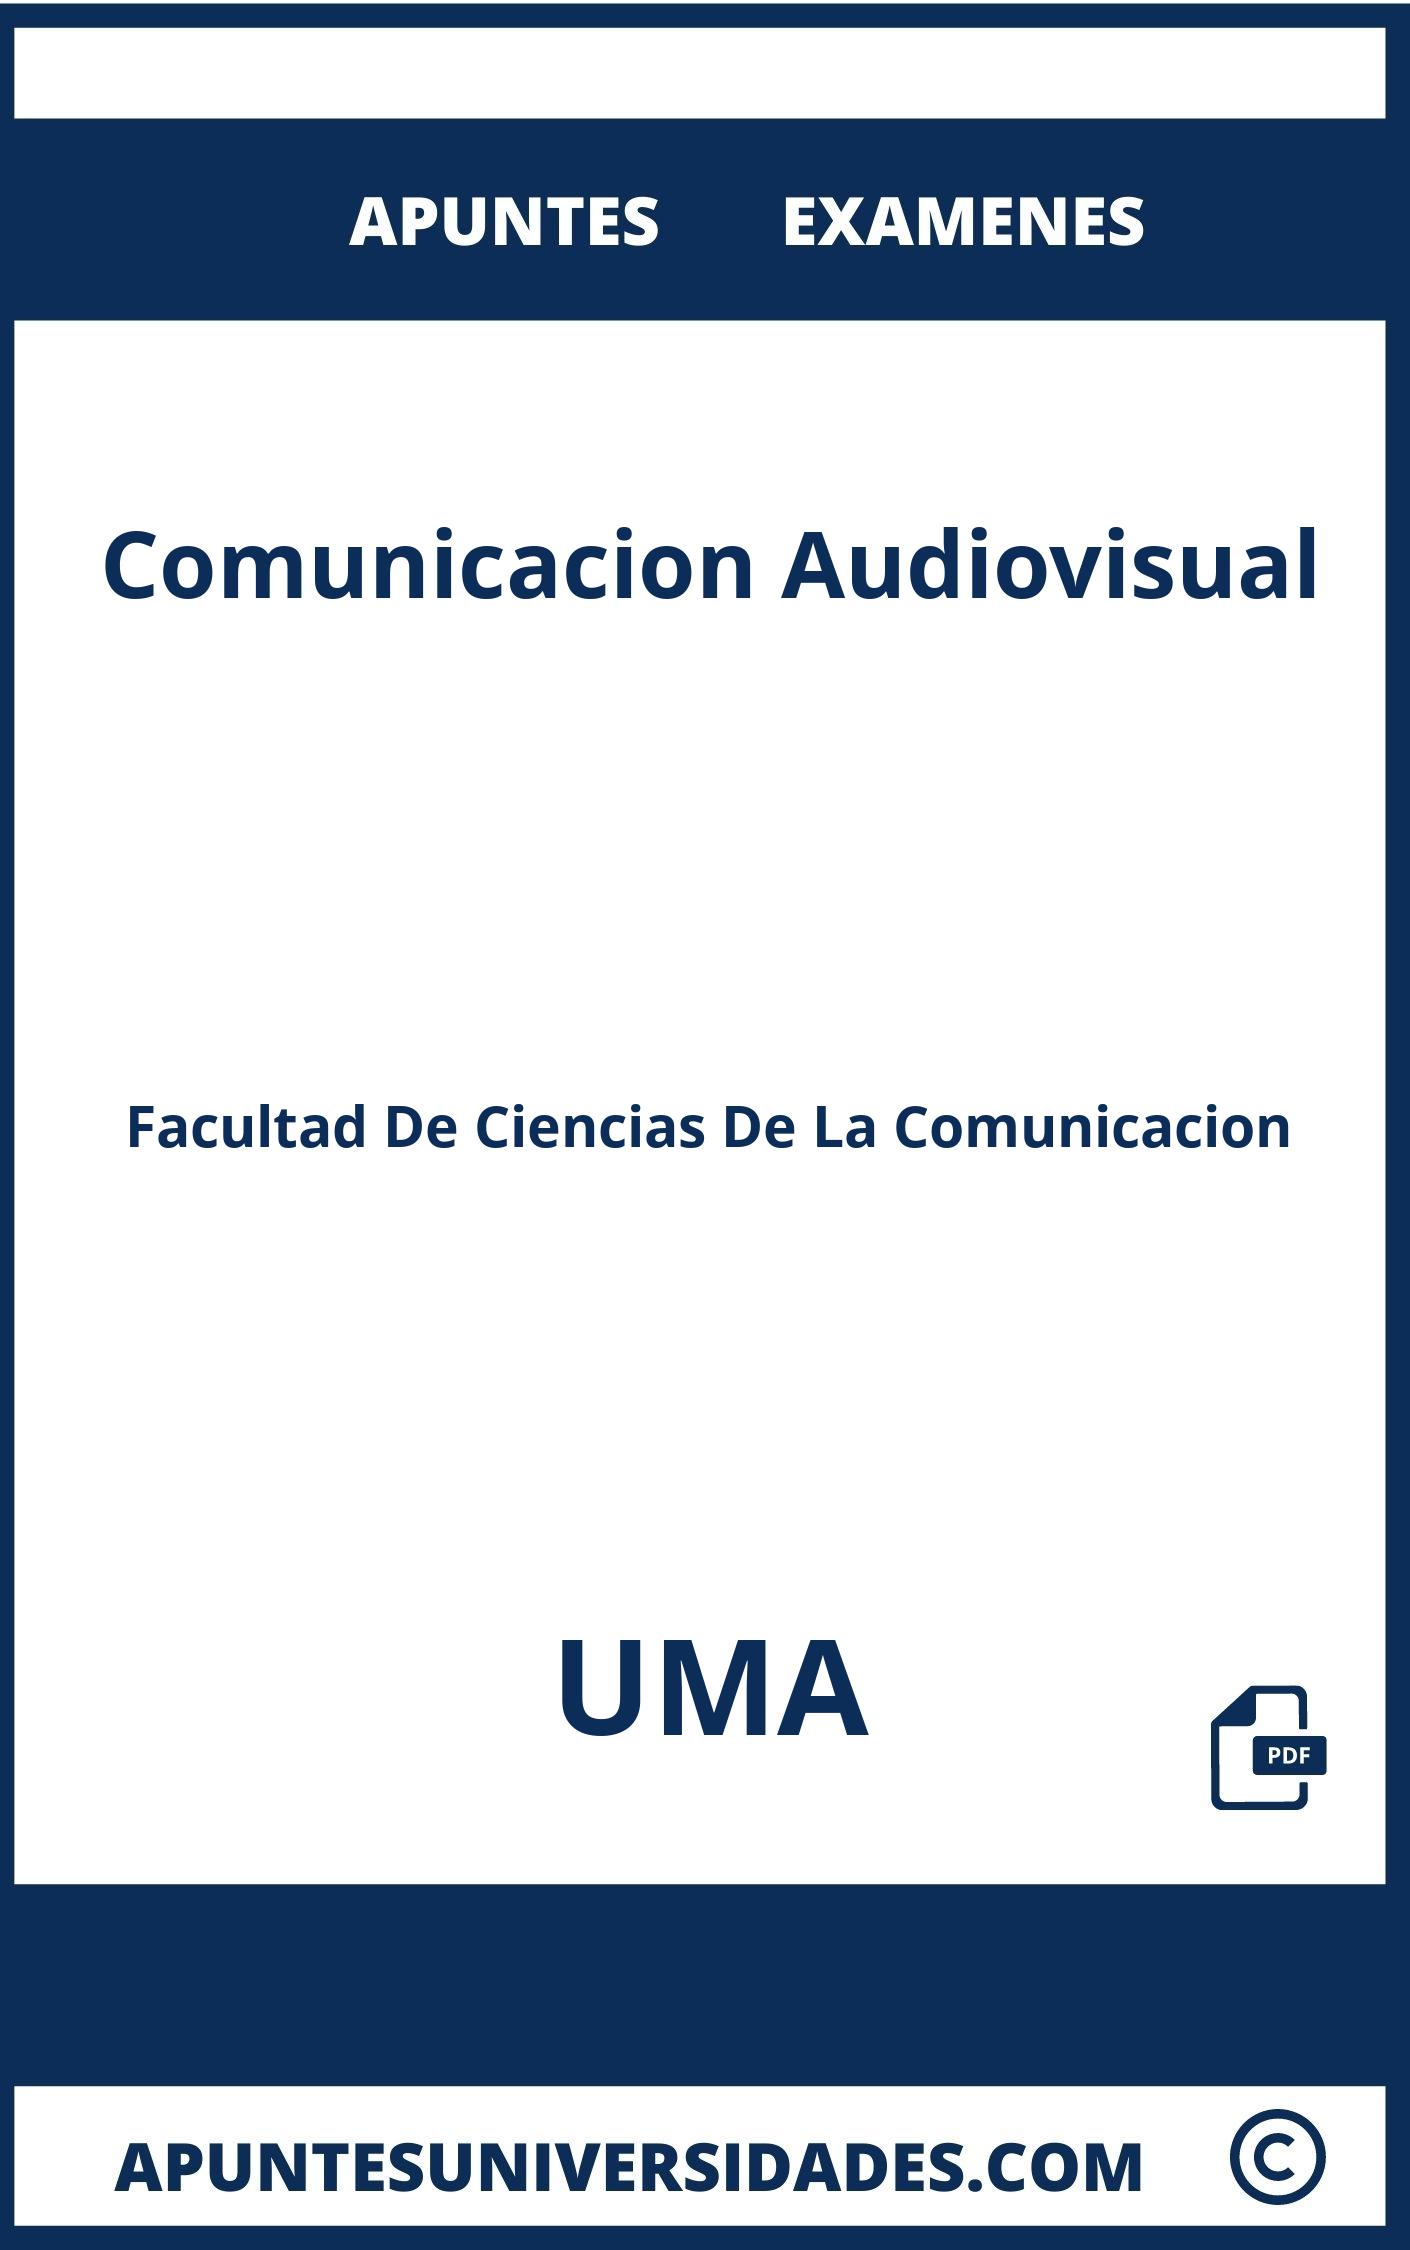 Apuntes Examenes Comunicacion Audiovisual UMA